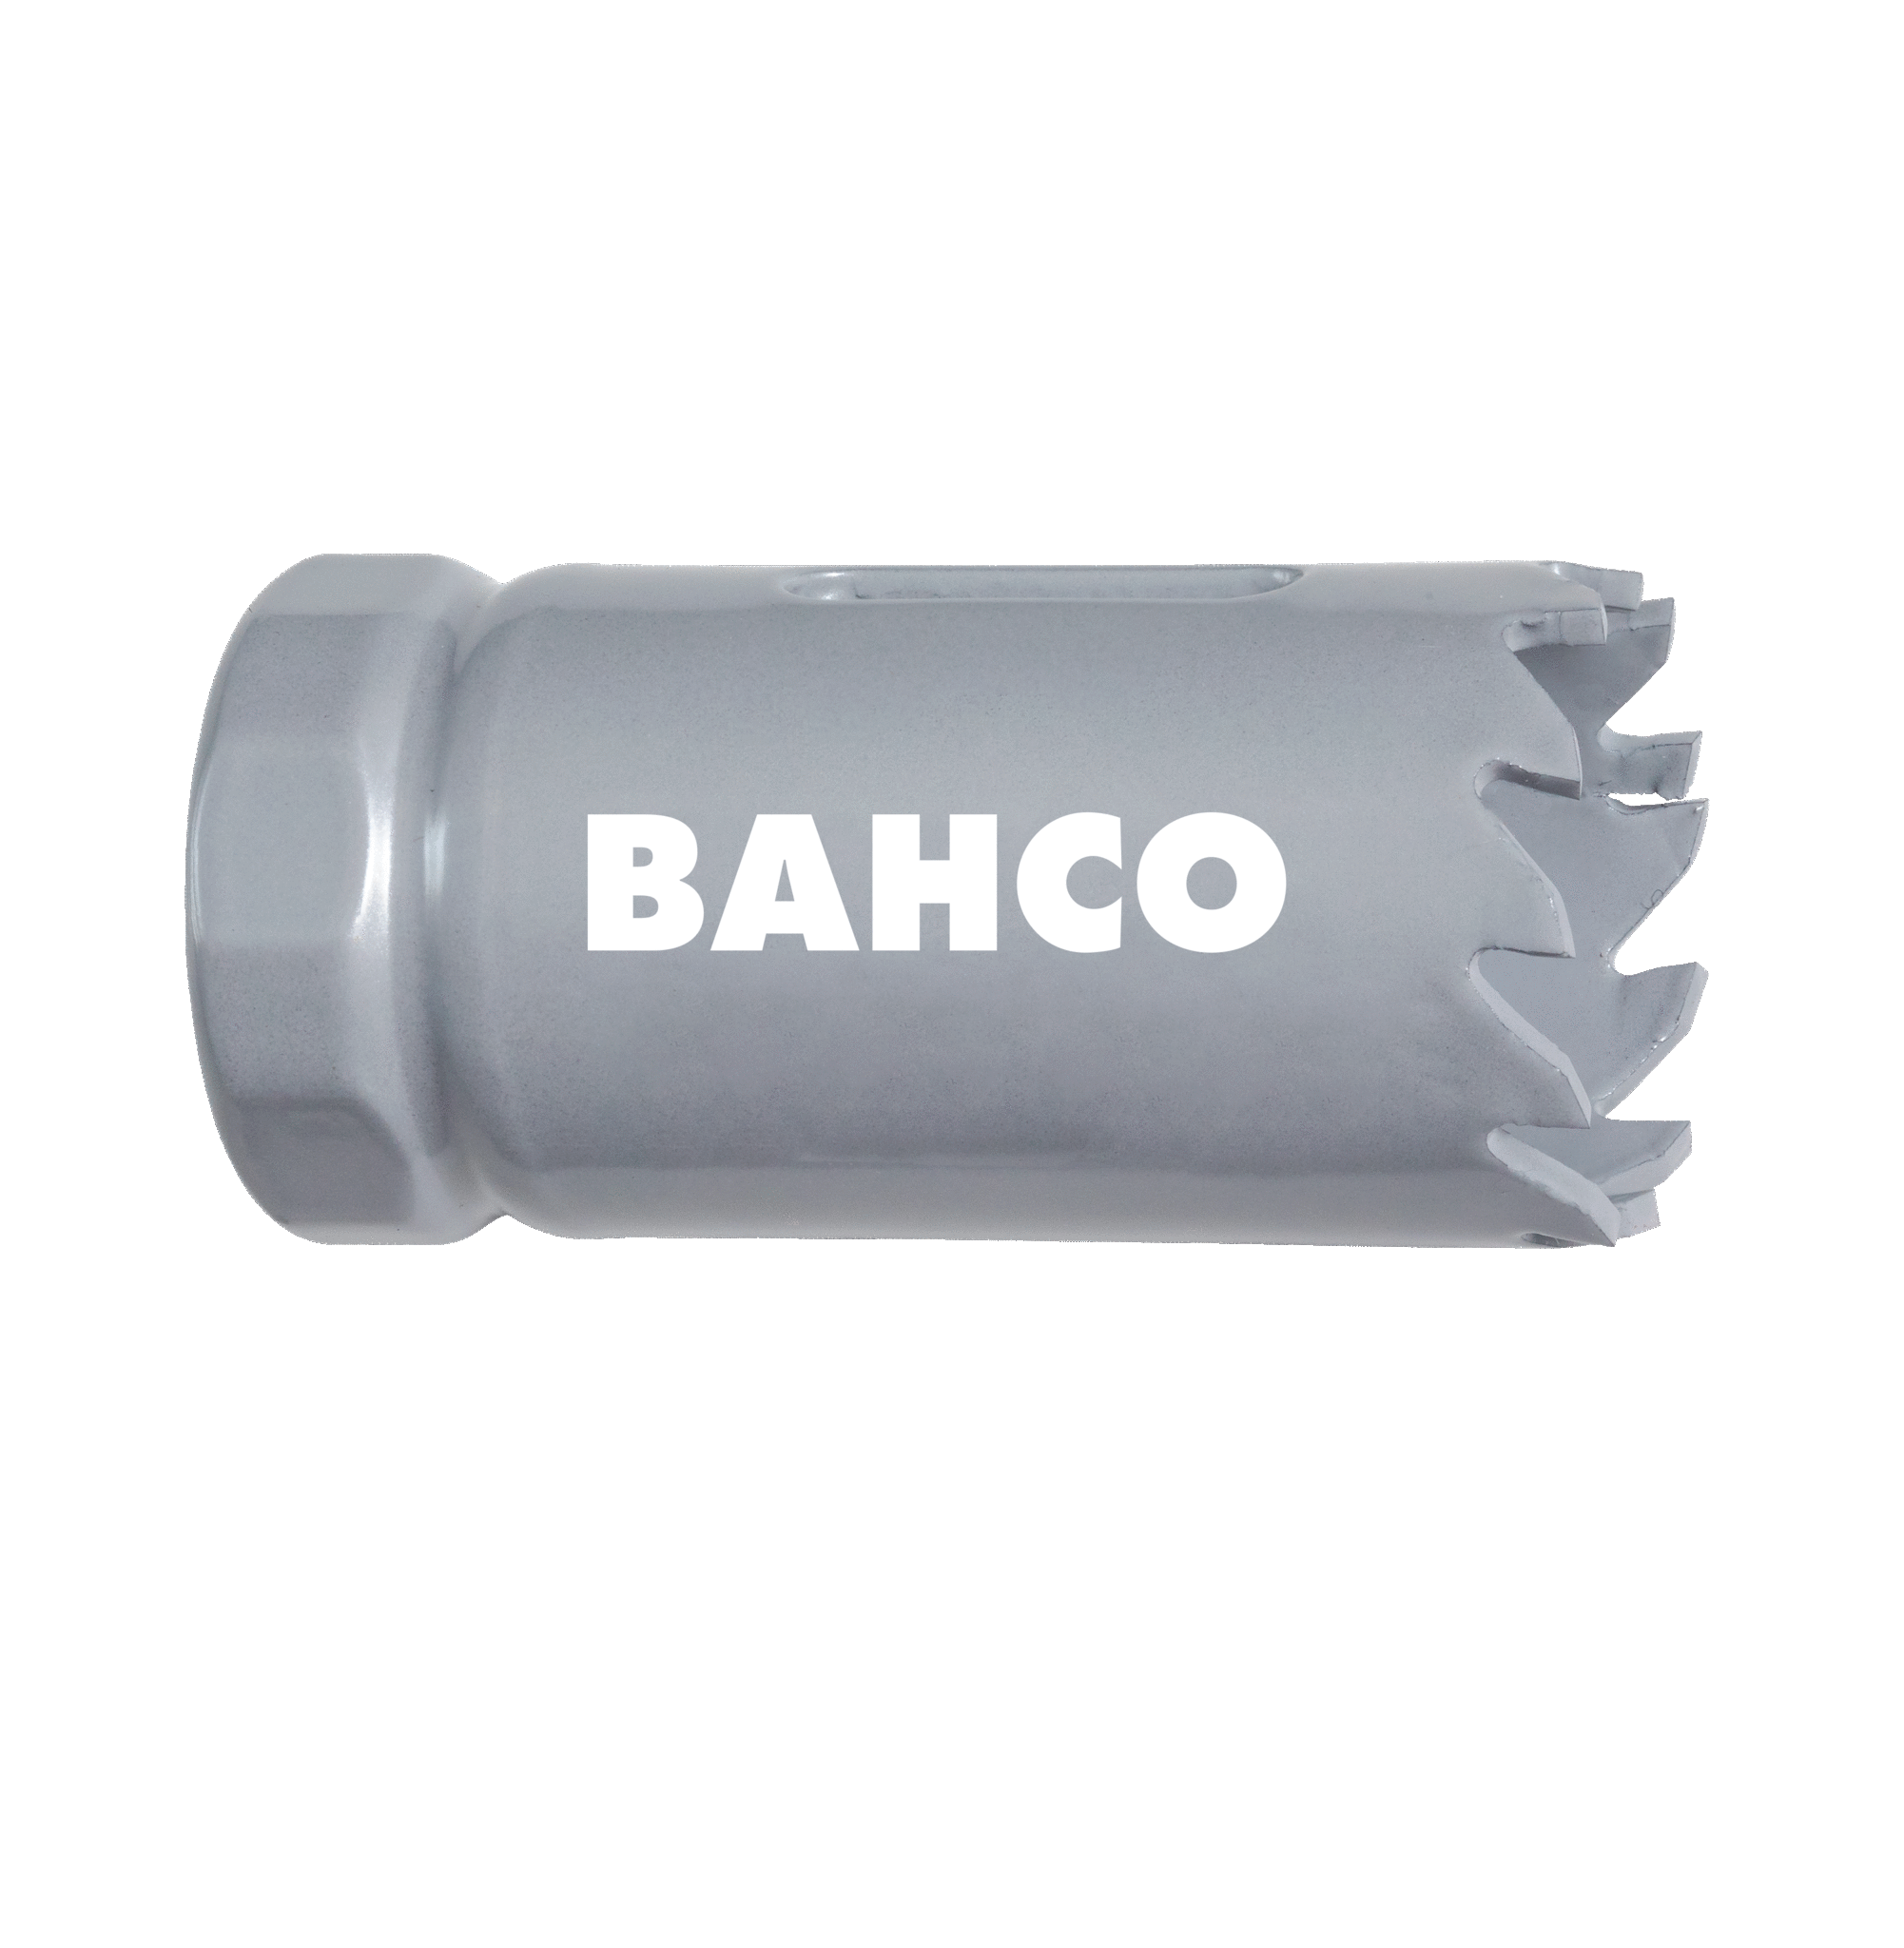 Кольцевые пилы с твердосплавными напайками BAHCO 3832-60